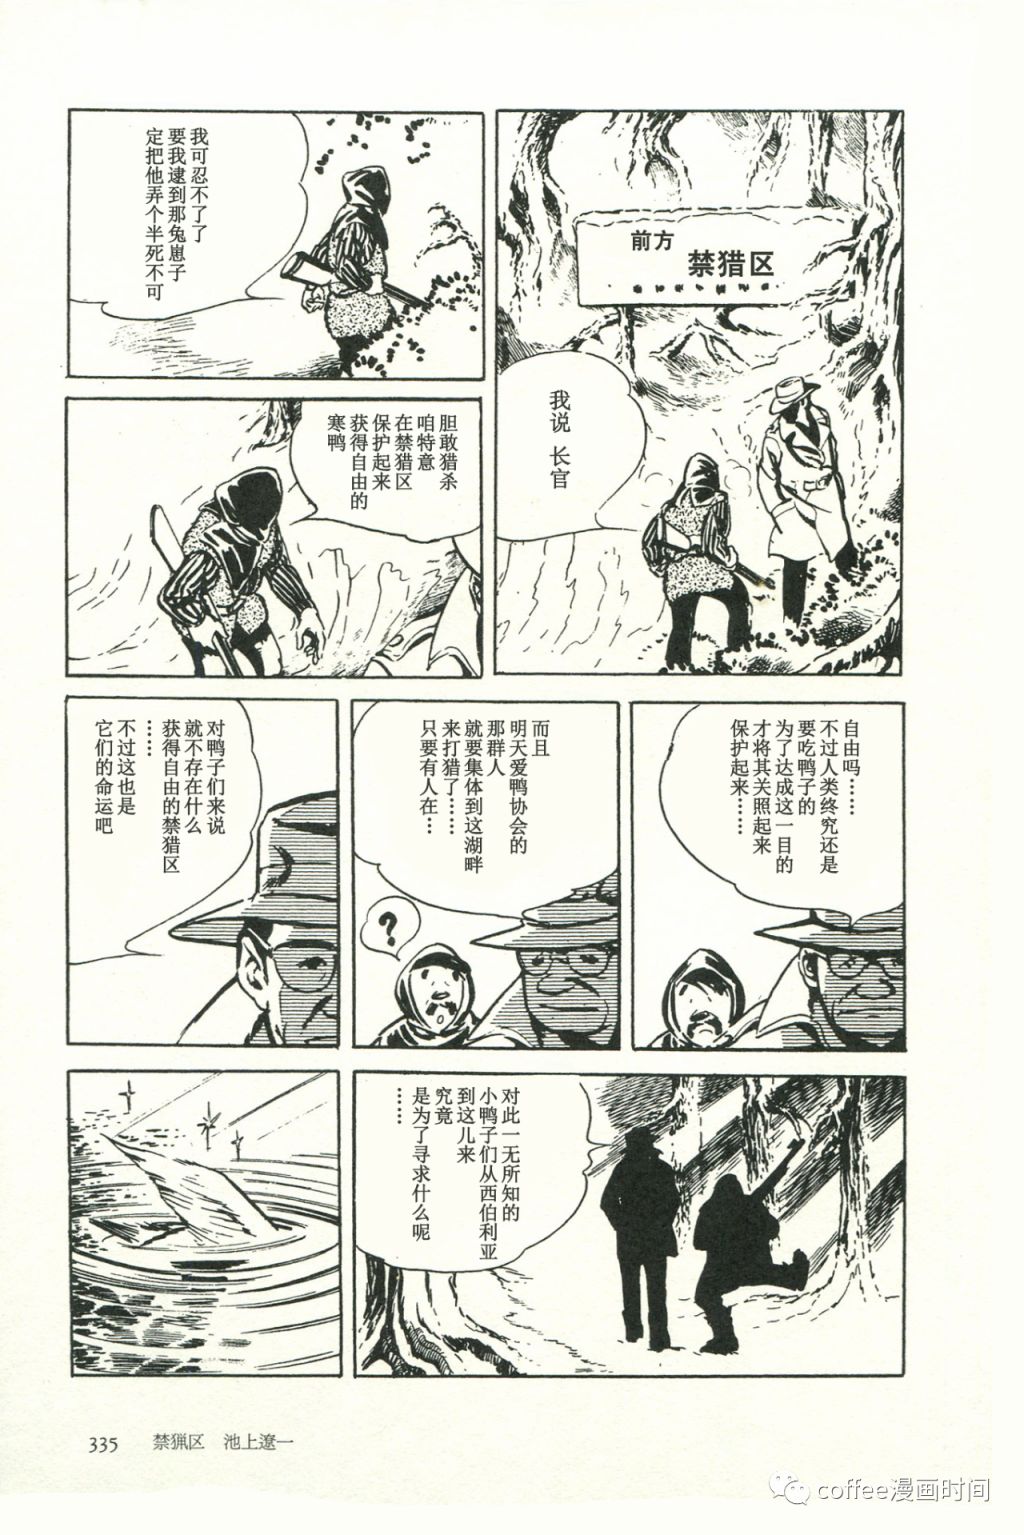 日本短篇漫畫傑作集 - 池上遼一《禁獵區》 - 1